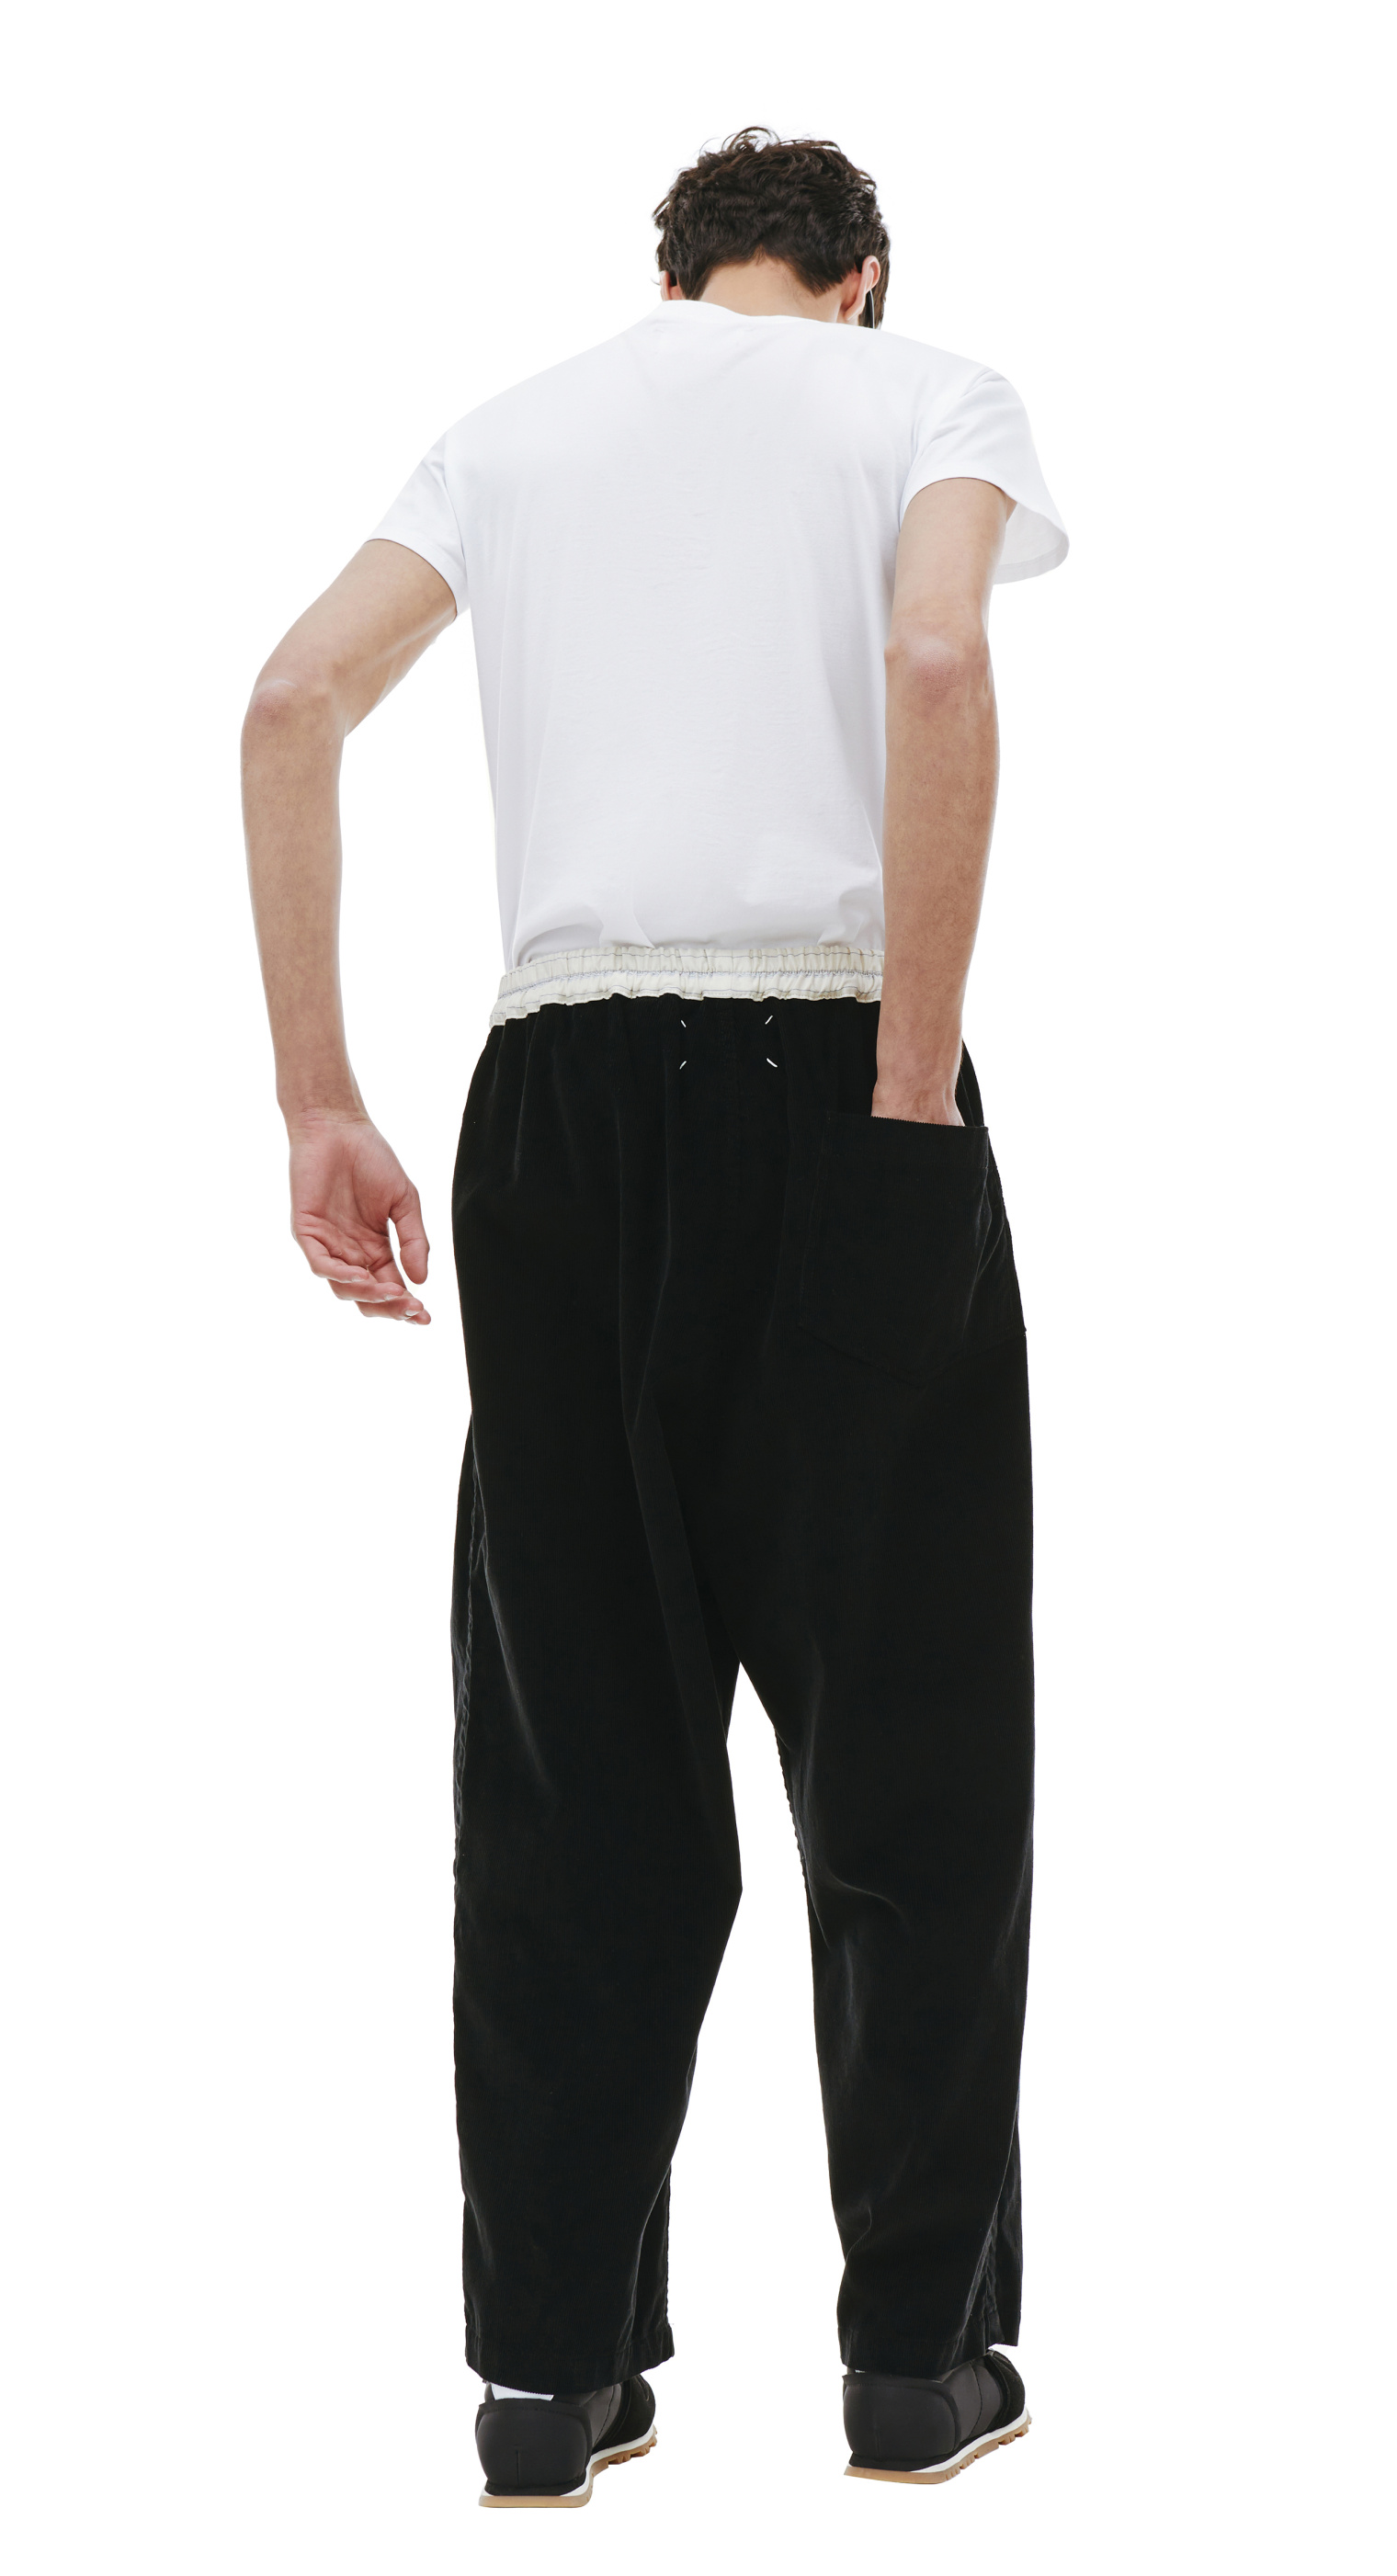 Buy Maison Margiela men black corduroy trousers for $725 online on